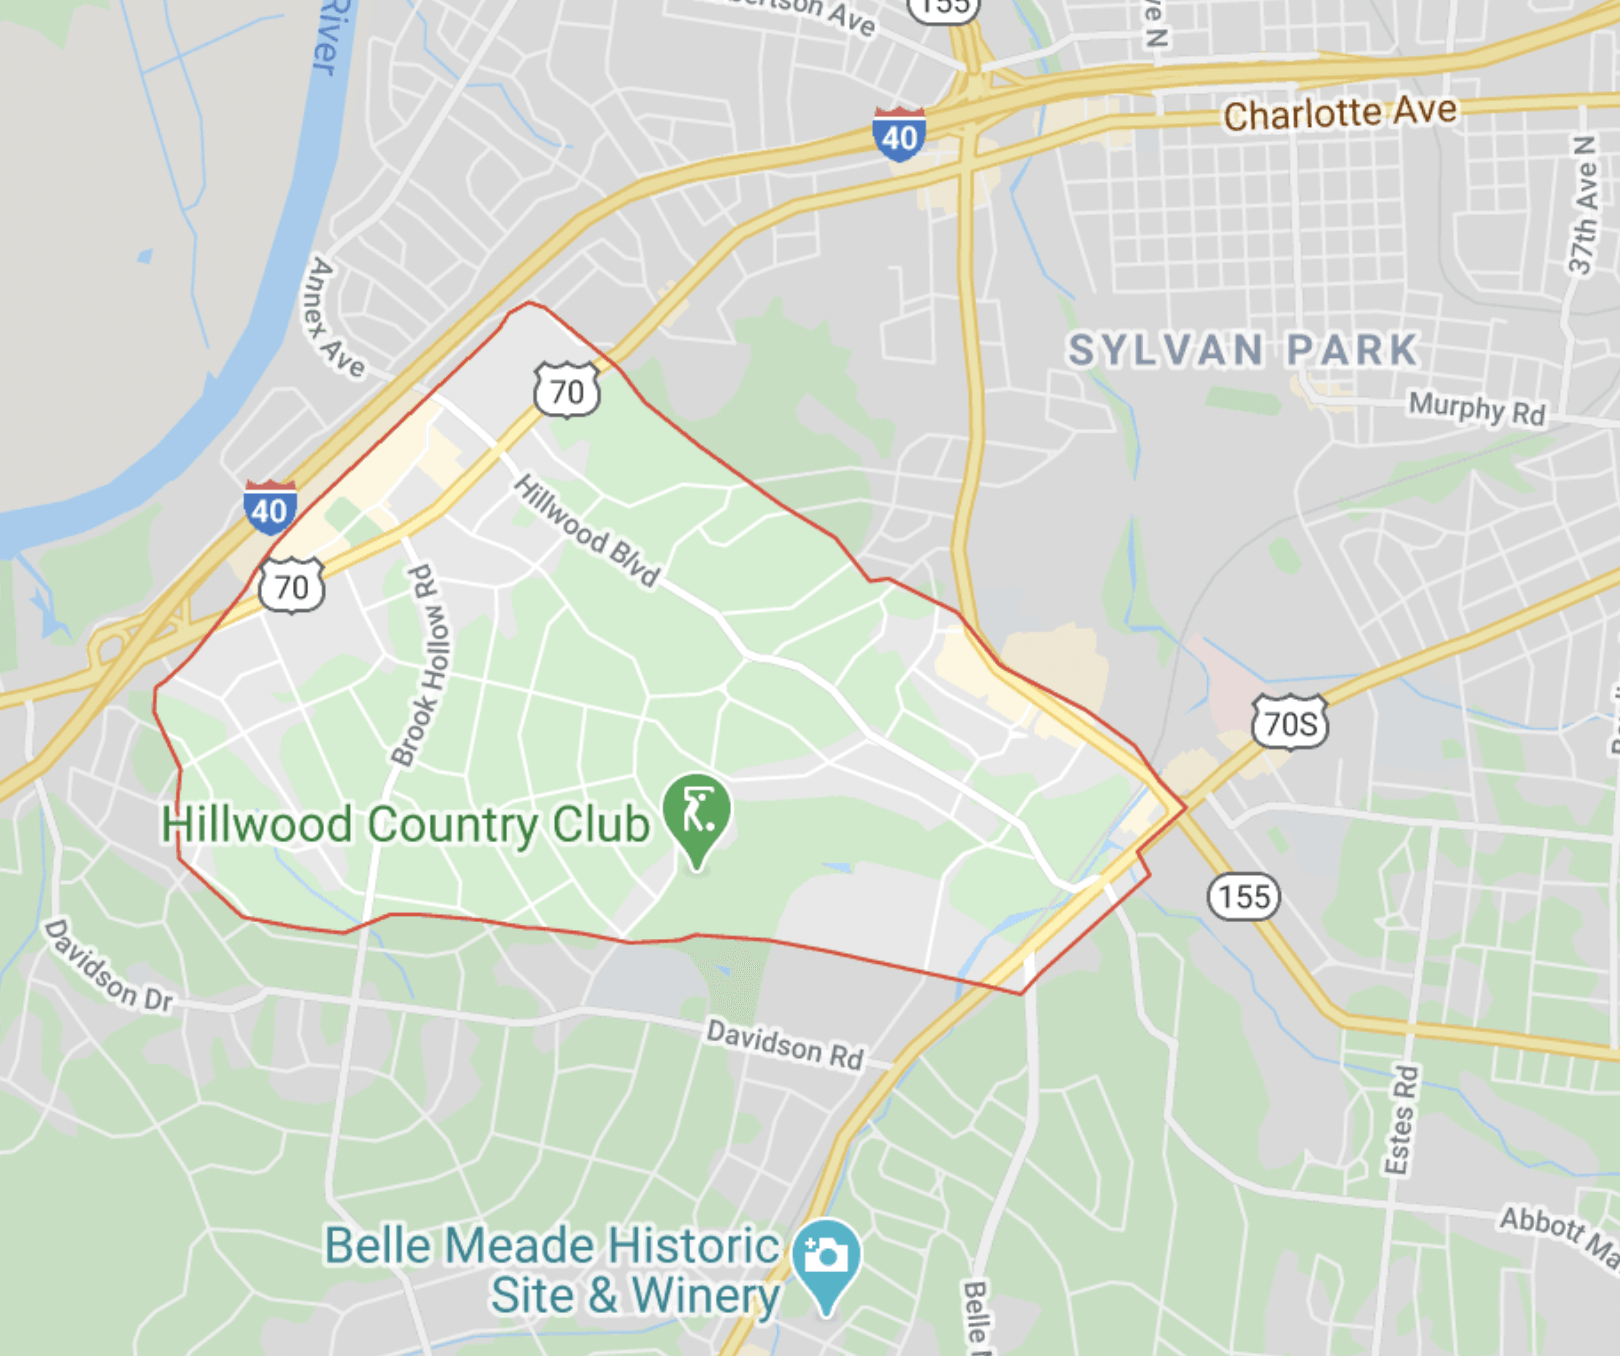 map of Oak Hill neighborhood in Nashville